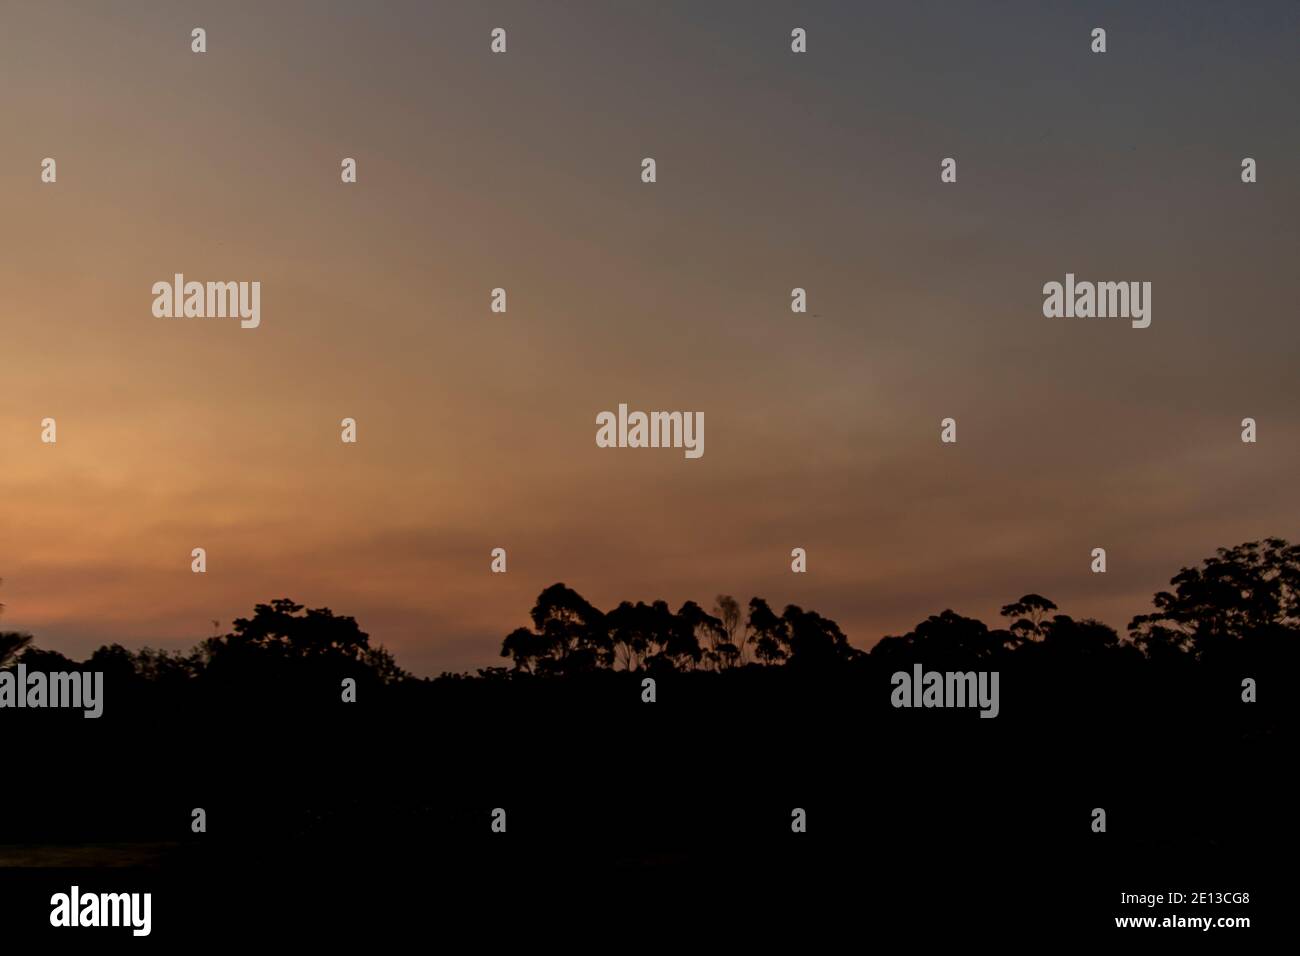 Brume fumée des feux de brousse australiens au coucher du soleil. Horizon sombre avec ciel gris discret. Tamborine Mountain, Queensland, Australie septembre 2019. Banque D'Images